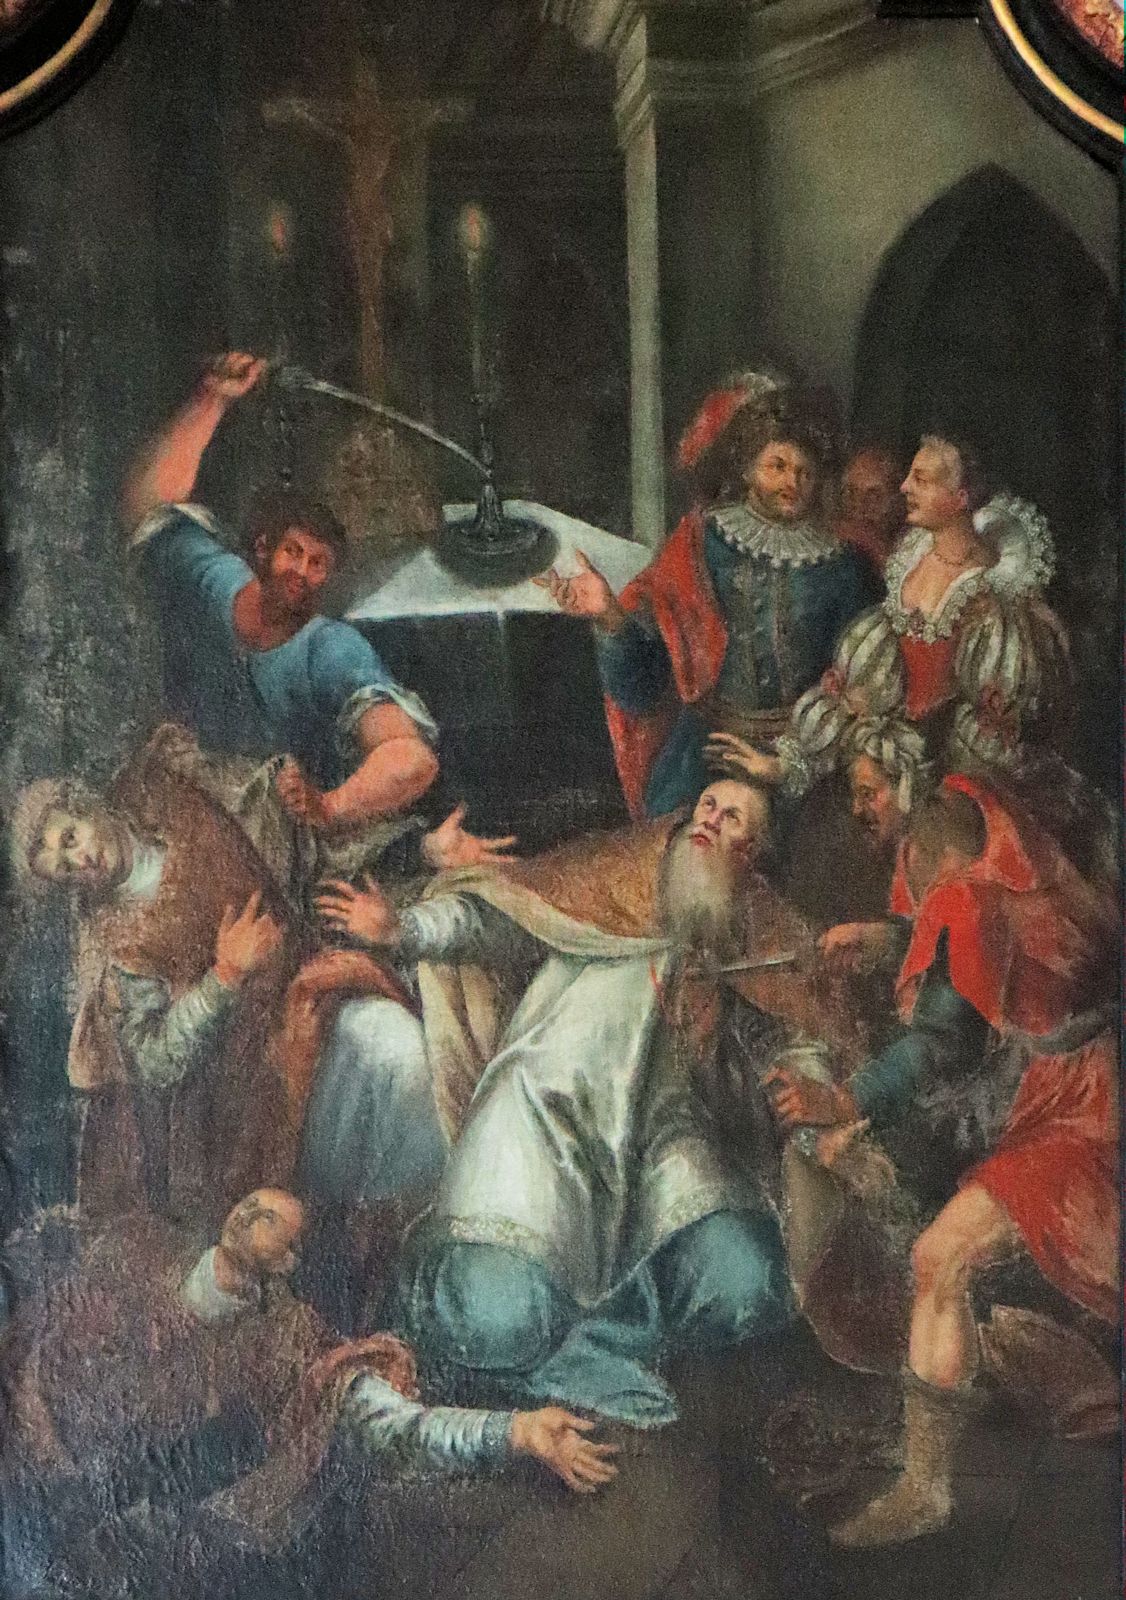 Ölbild: Die Ermordung von Kilian, Totnan und Kolonat, um 1790, in der Kirche St. Michael und St. Gertrudis in Neustadt am Main